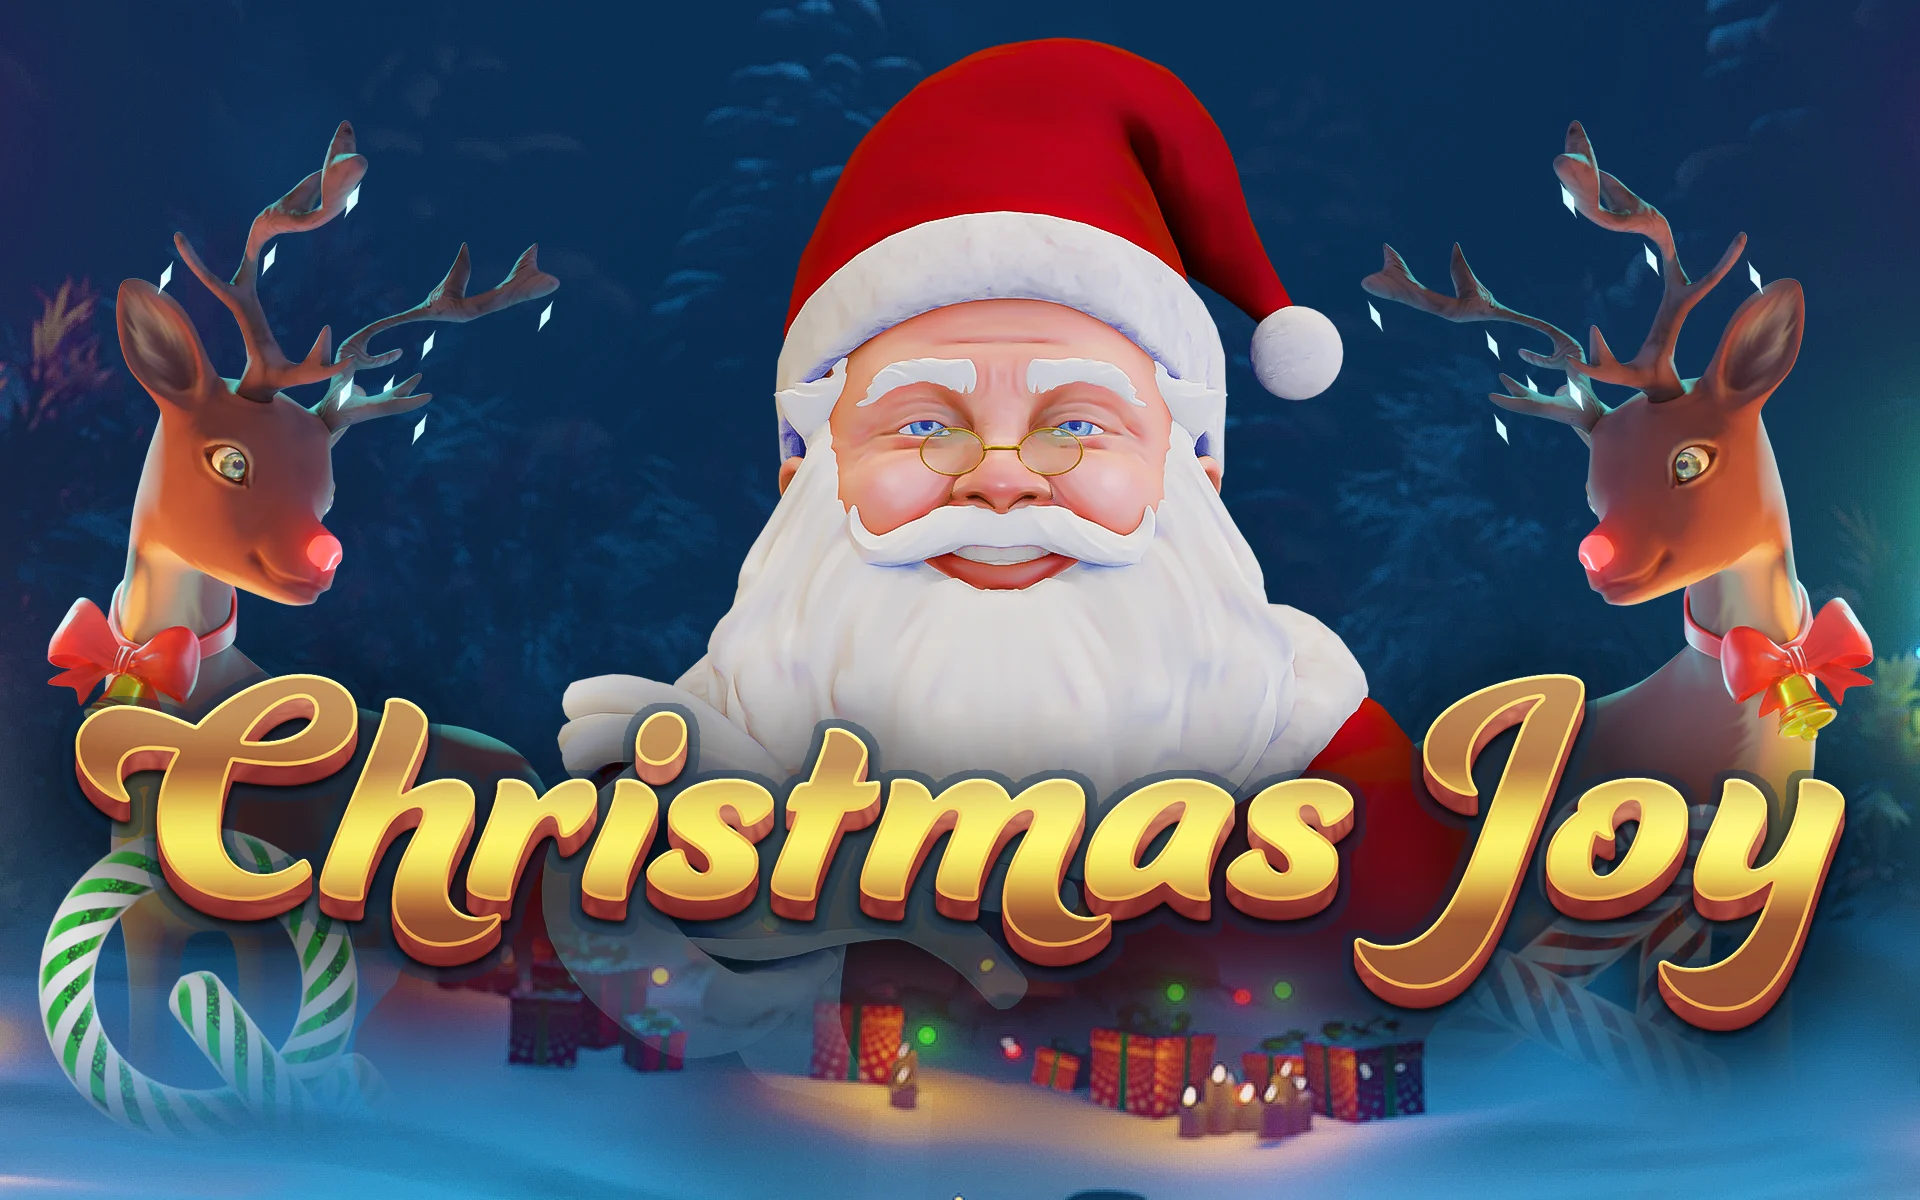 Speel Christmas Joy op Starcasino.be online casino